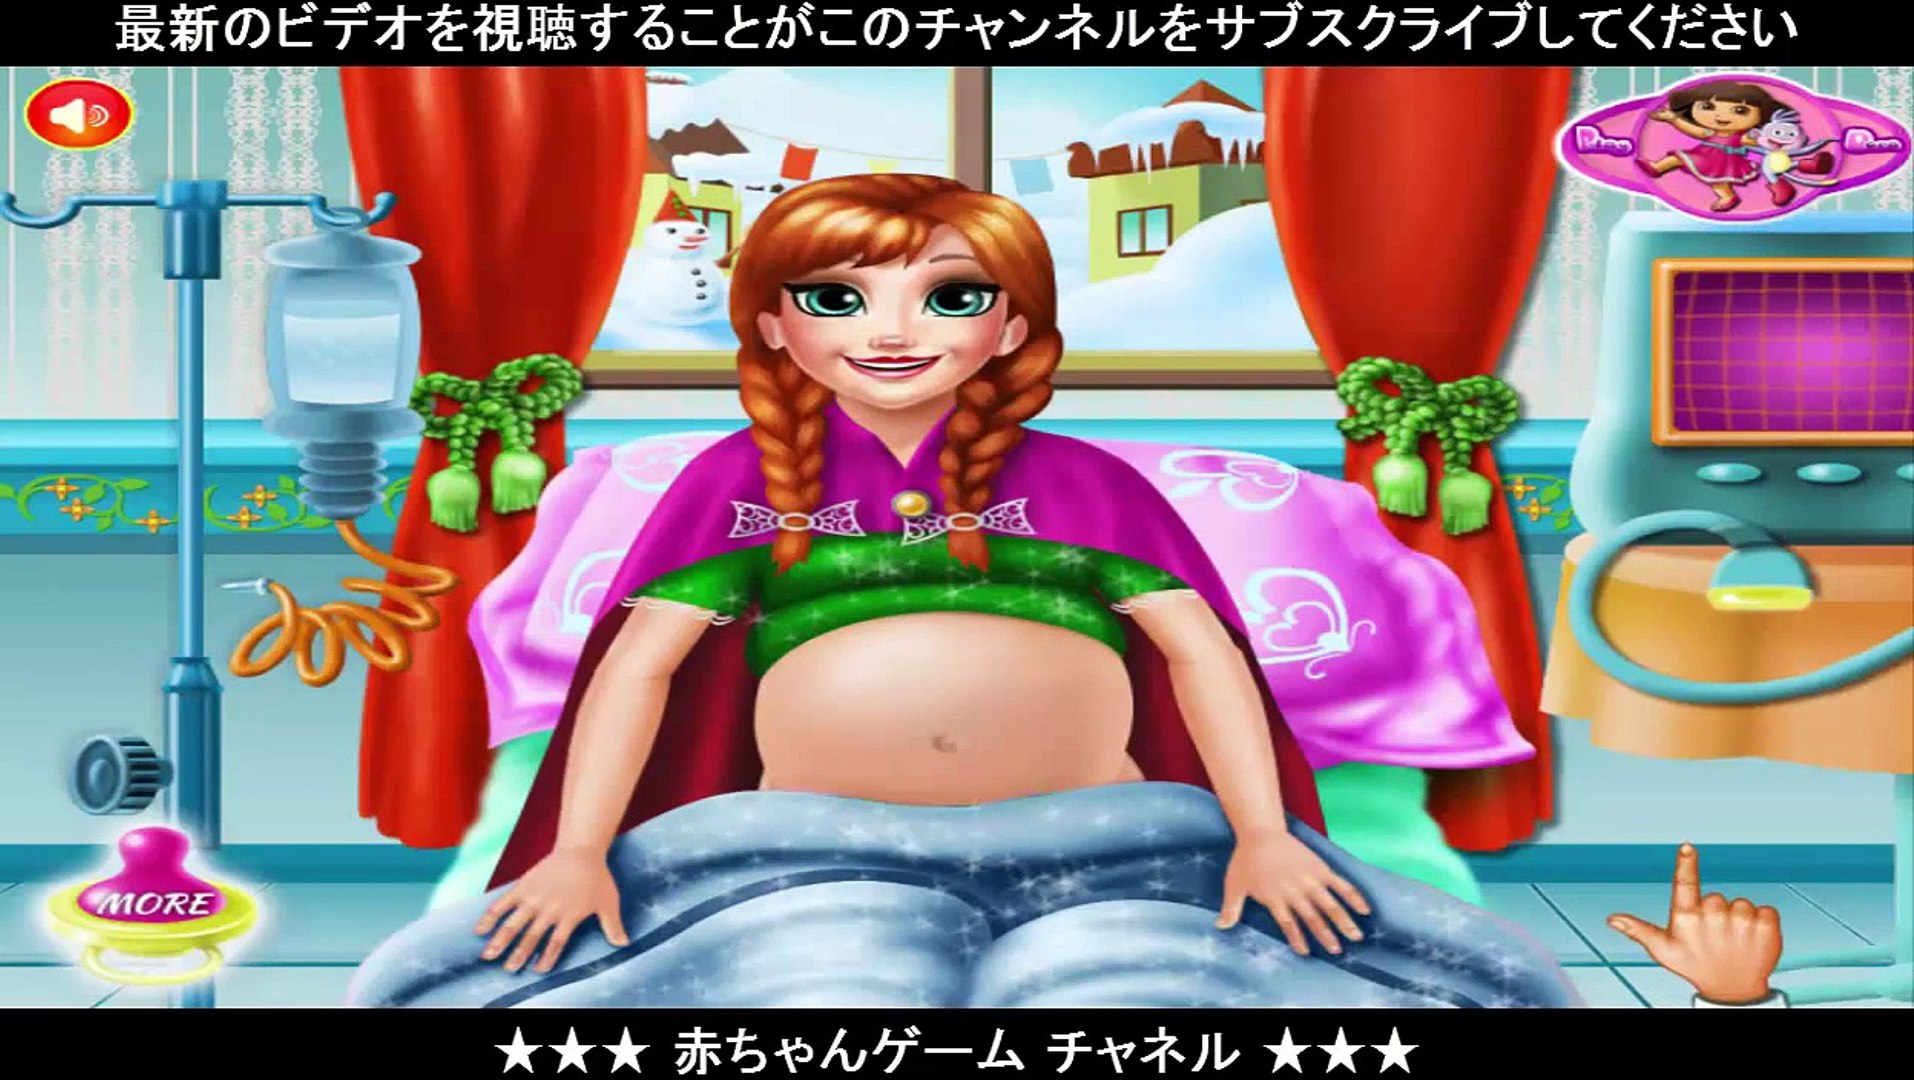 119 冷凍アンナ産科医ゲーム 妊娠中のアンナ冷凍赤ちゃん誕生ゲーム Video Dailymotion